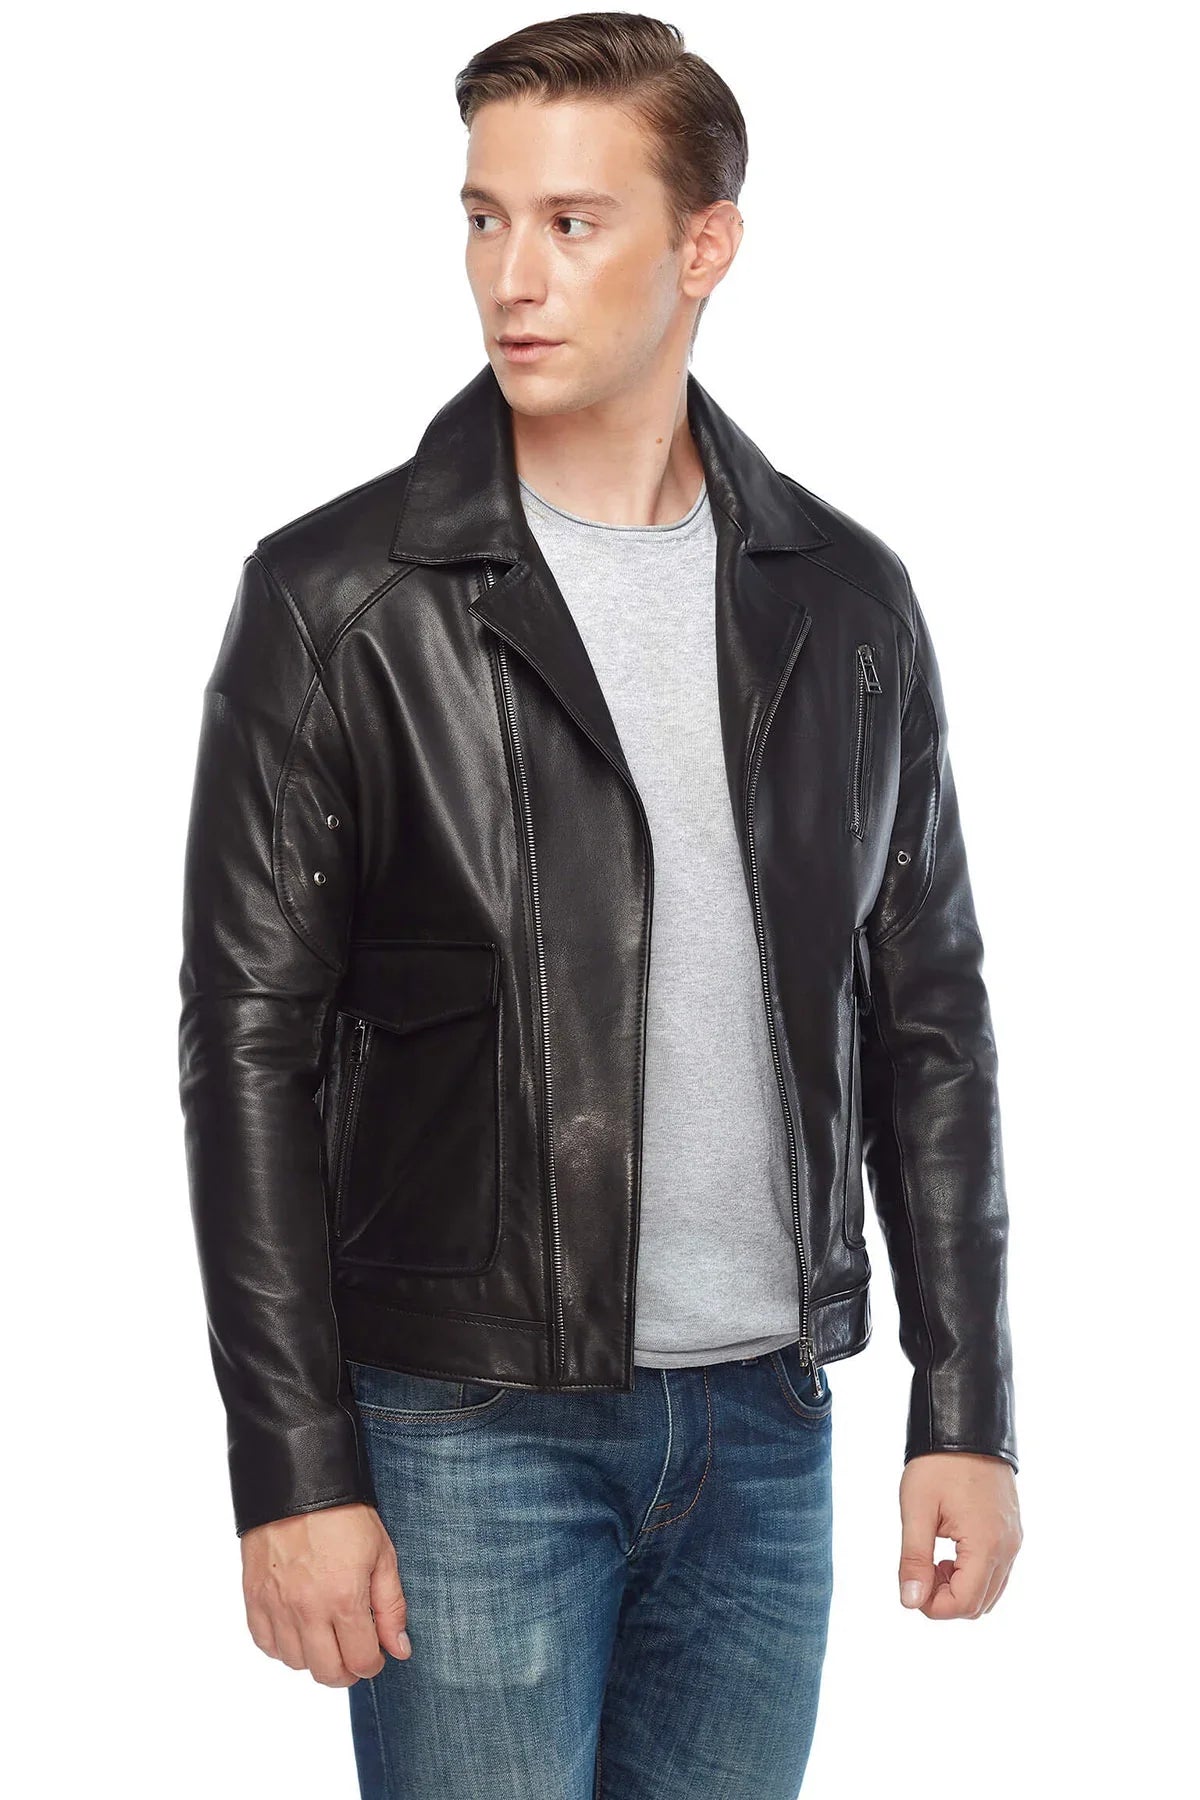 Real Leather Black Biker Jacket for Men – LJ